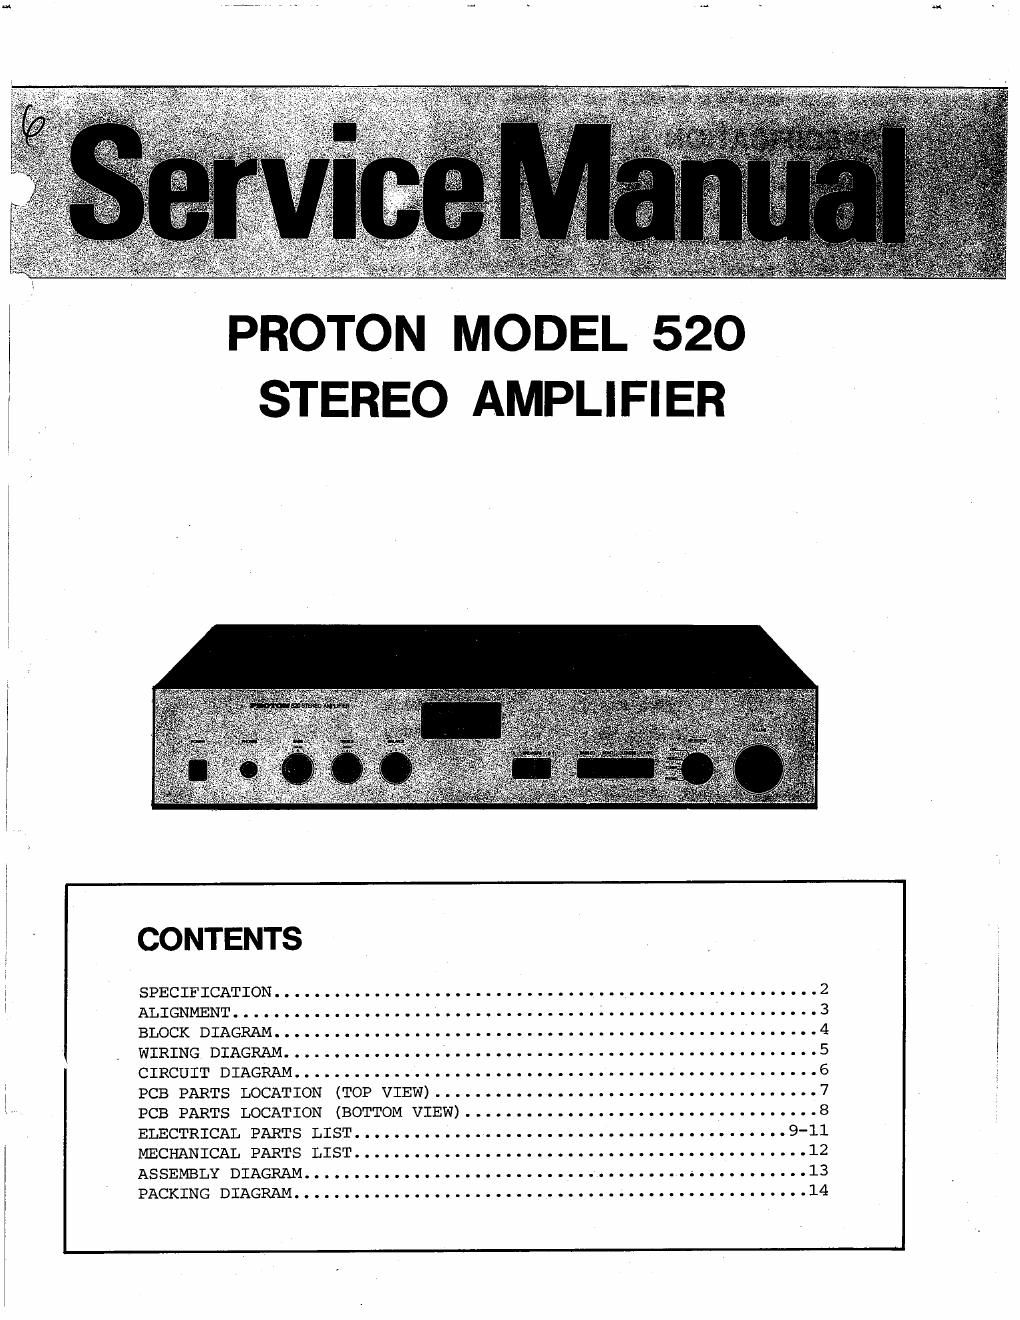 proton 520 service